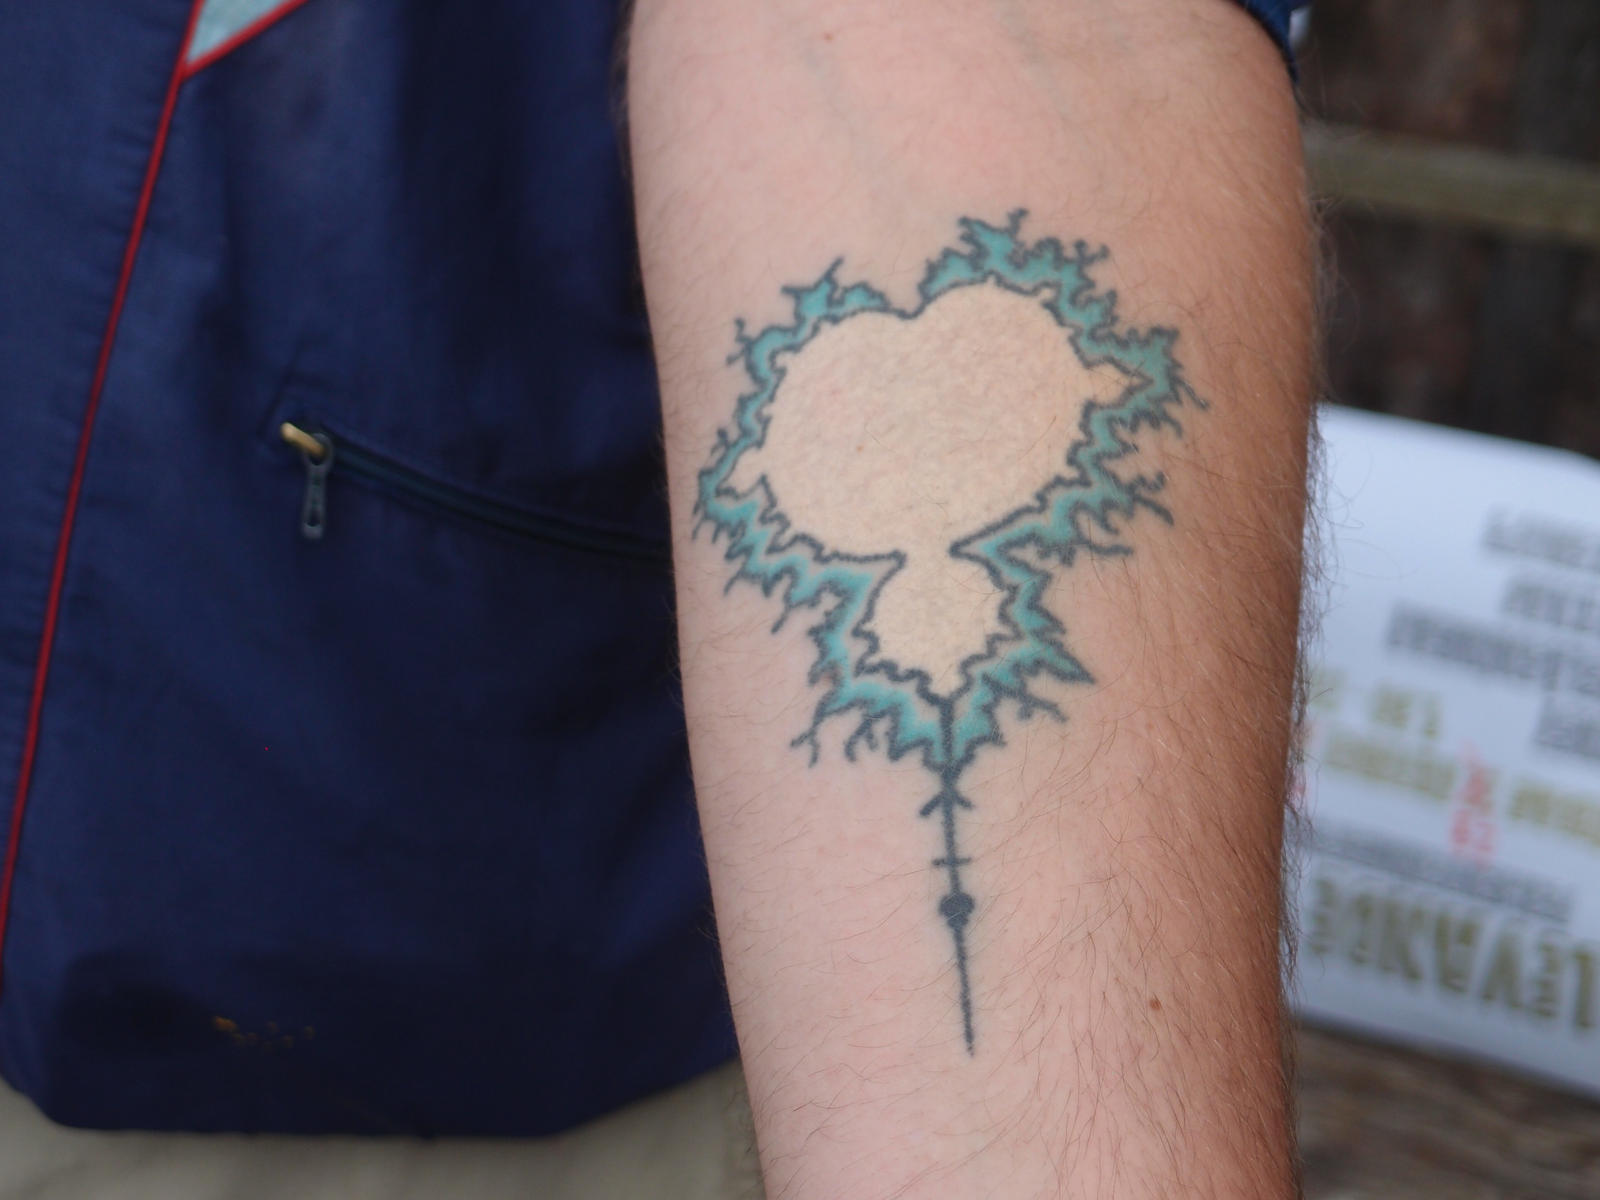 Mandelbrot tattoo by FractalMonster on DeviantArt